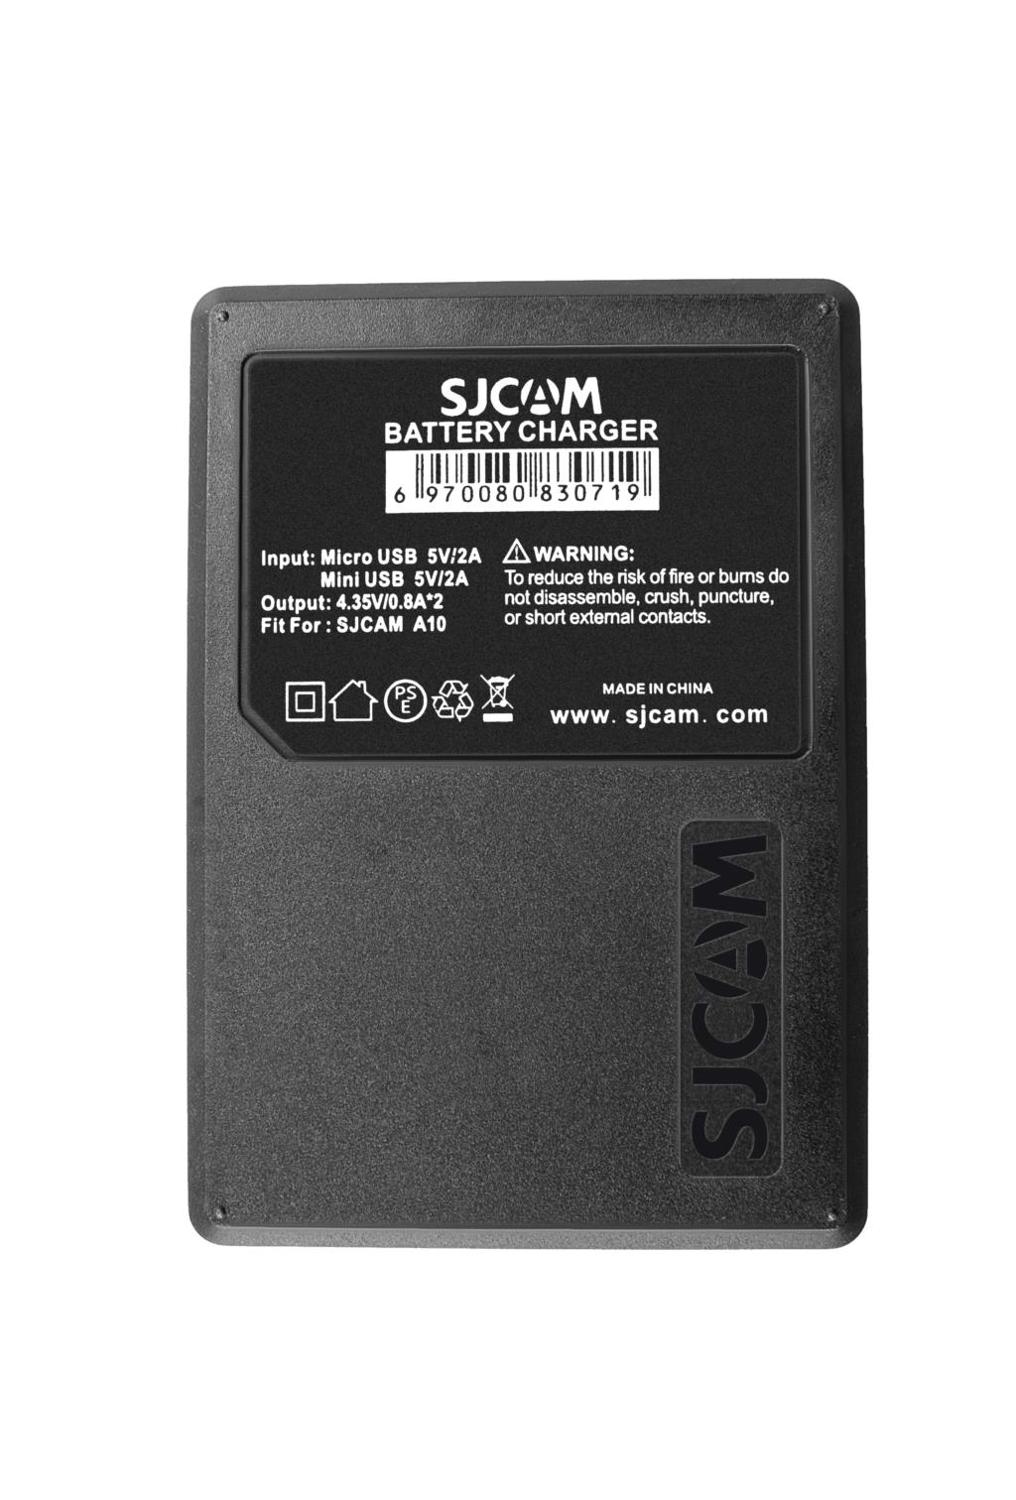 100%  originale sjcam  a10 2650 mah backup genopladeligt li-on batteri og opladertilbehør til sjcam  a10 wifi sportskamera dv